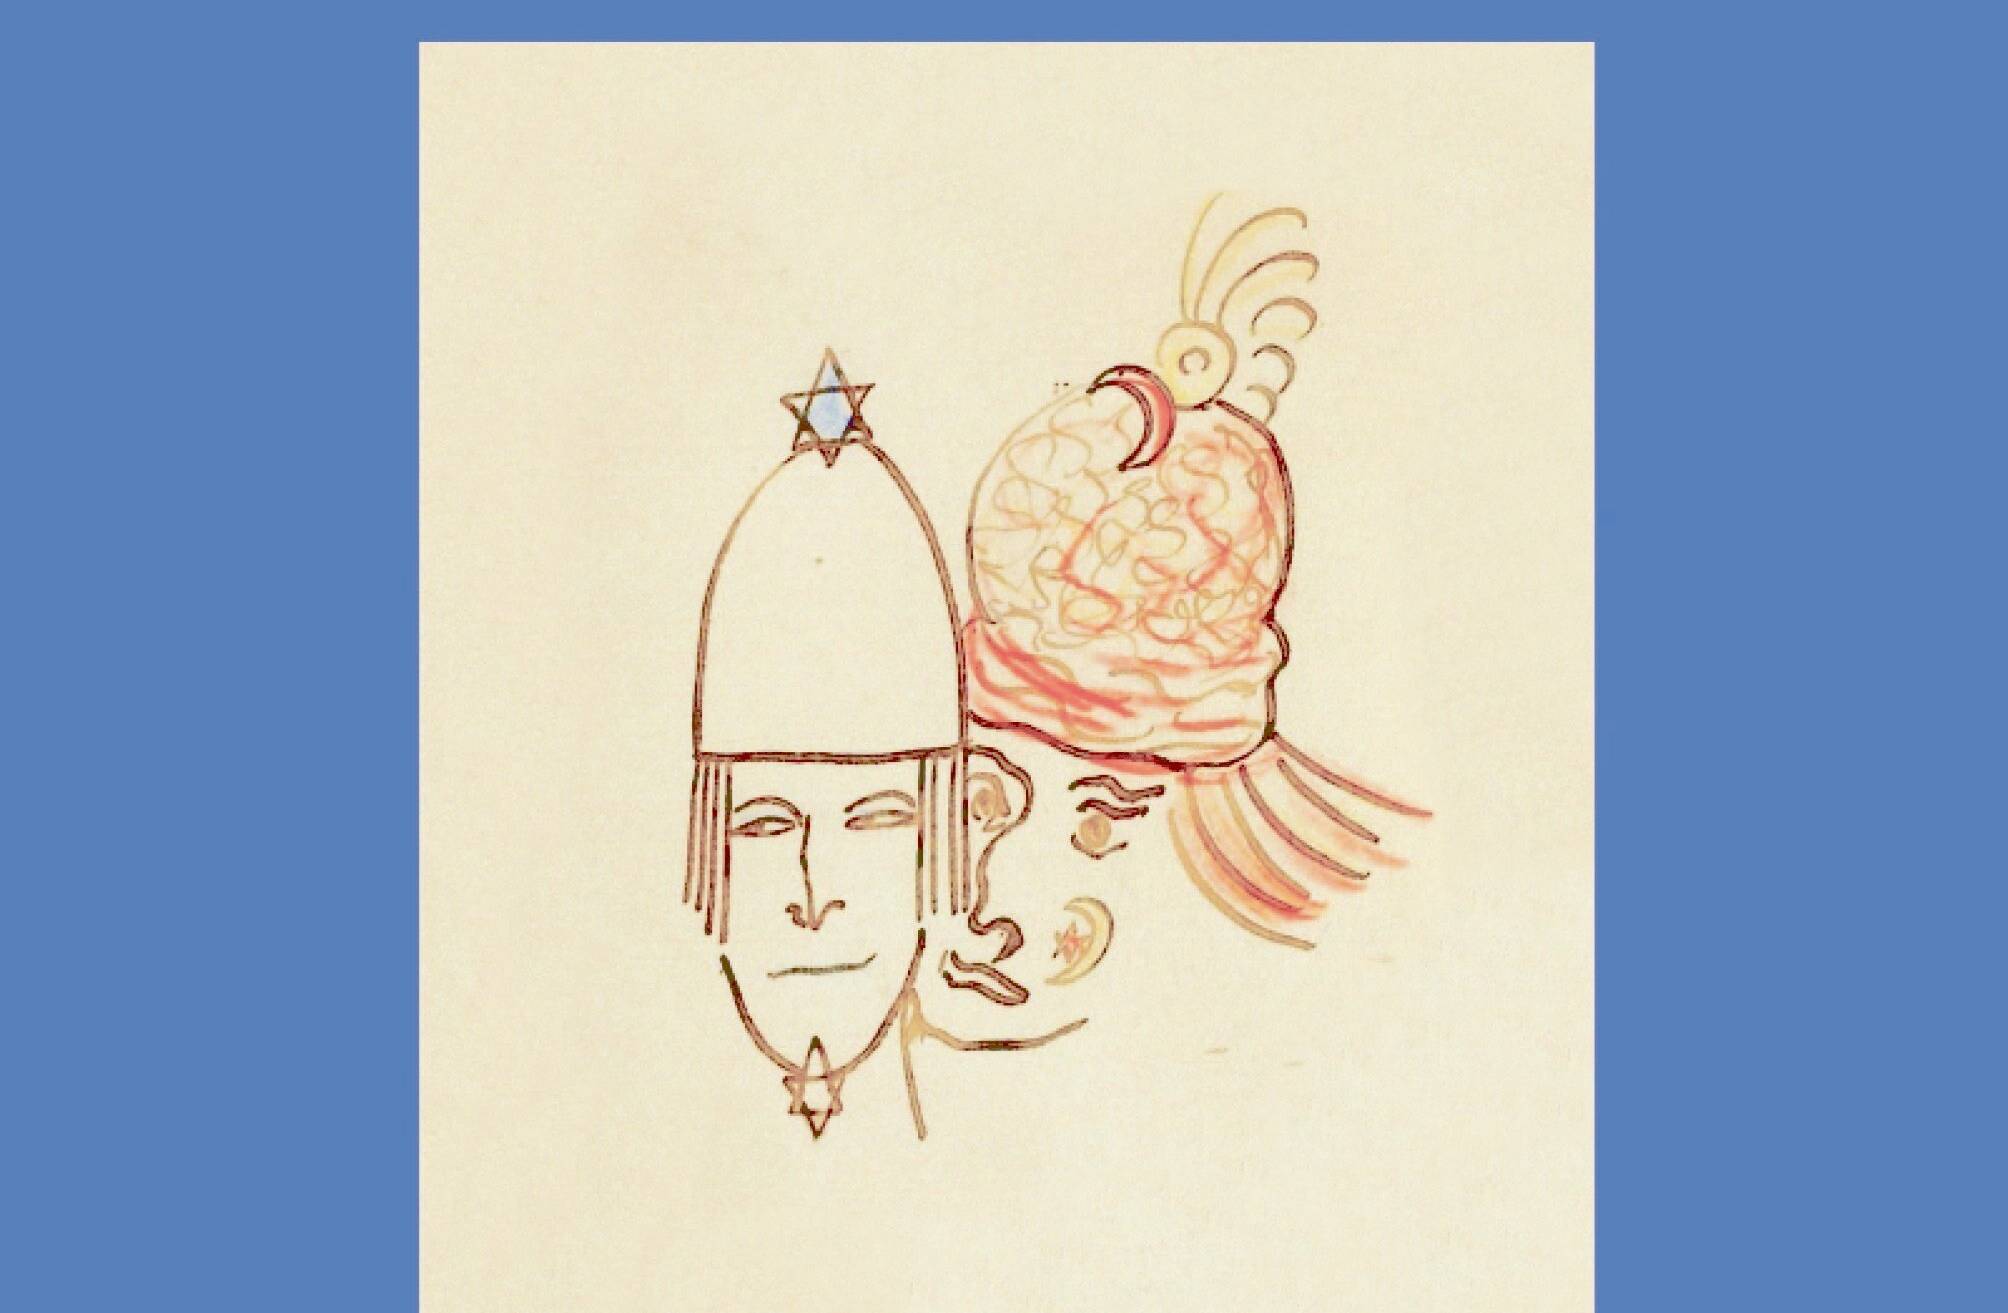  Das Cover von „Die Facetten des Prinzen Jussuf“ von Hajo Jahn. 
  